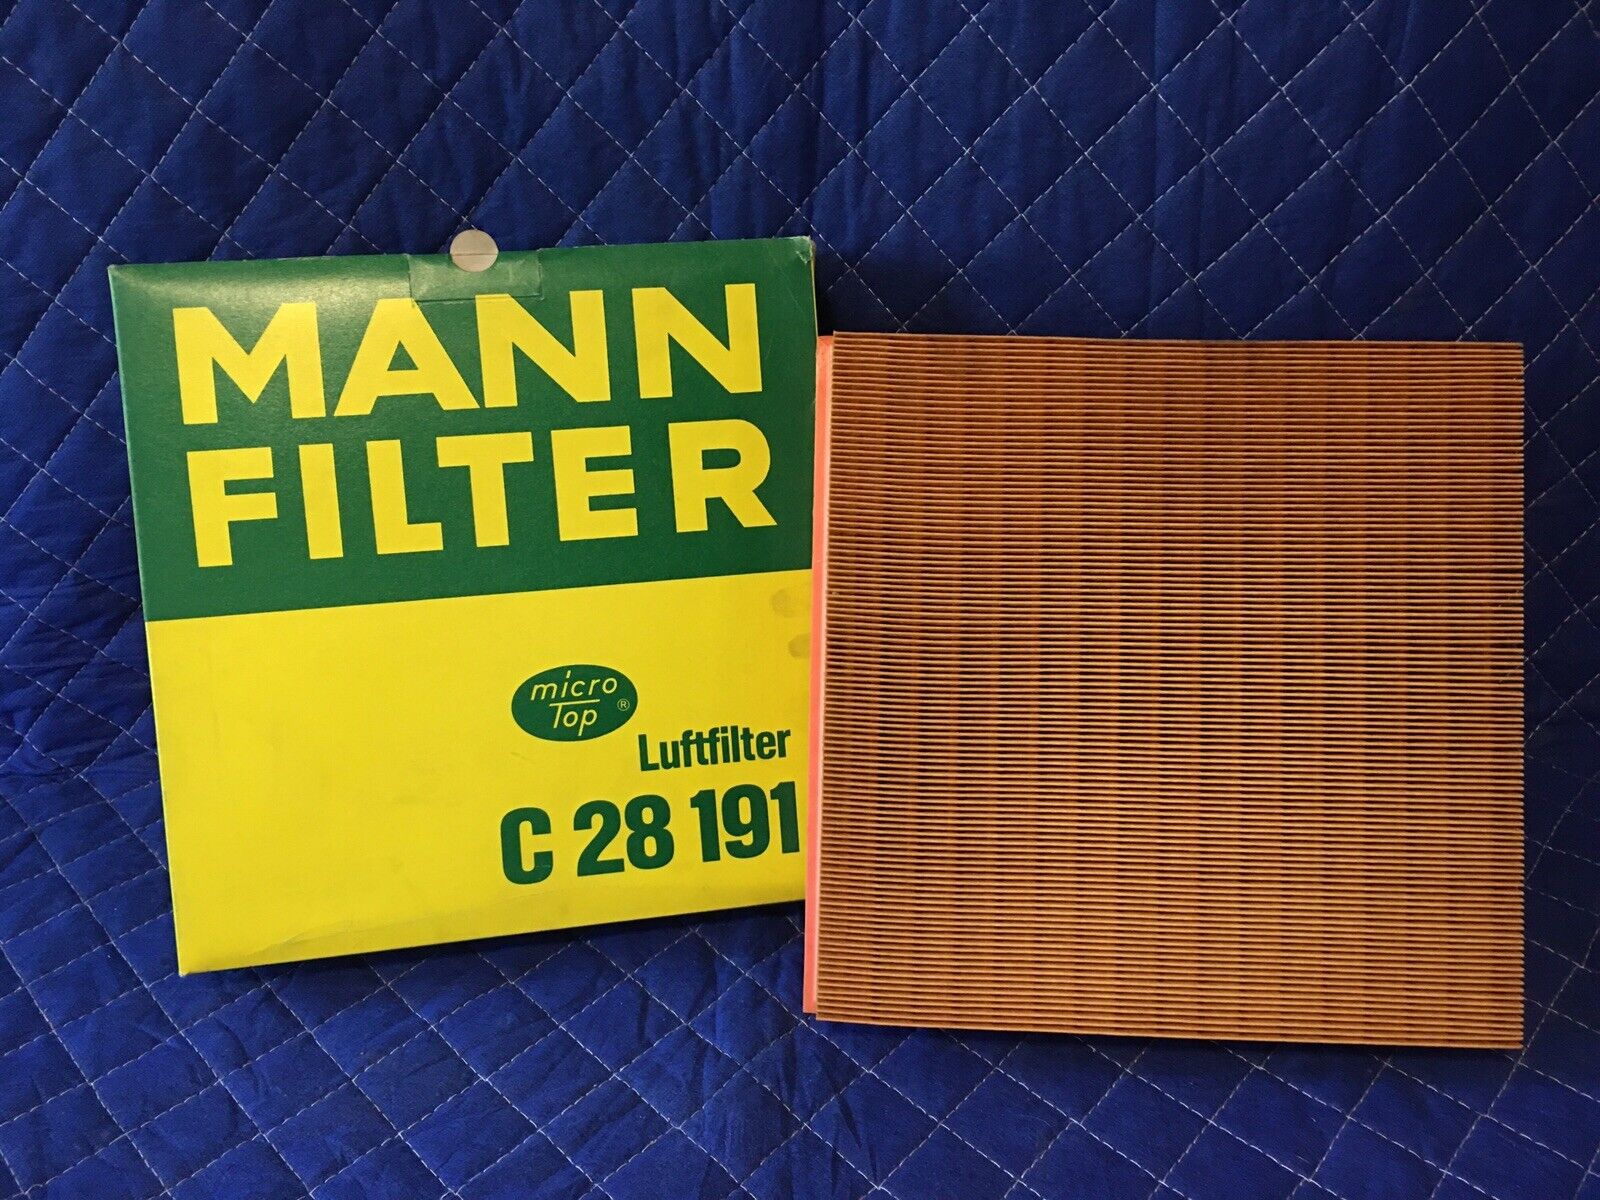 MANN FILTER Mercedes Air Filter 300SD S350D 1992-1995 / C28191 / C 28 191